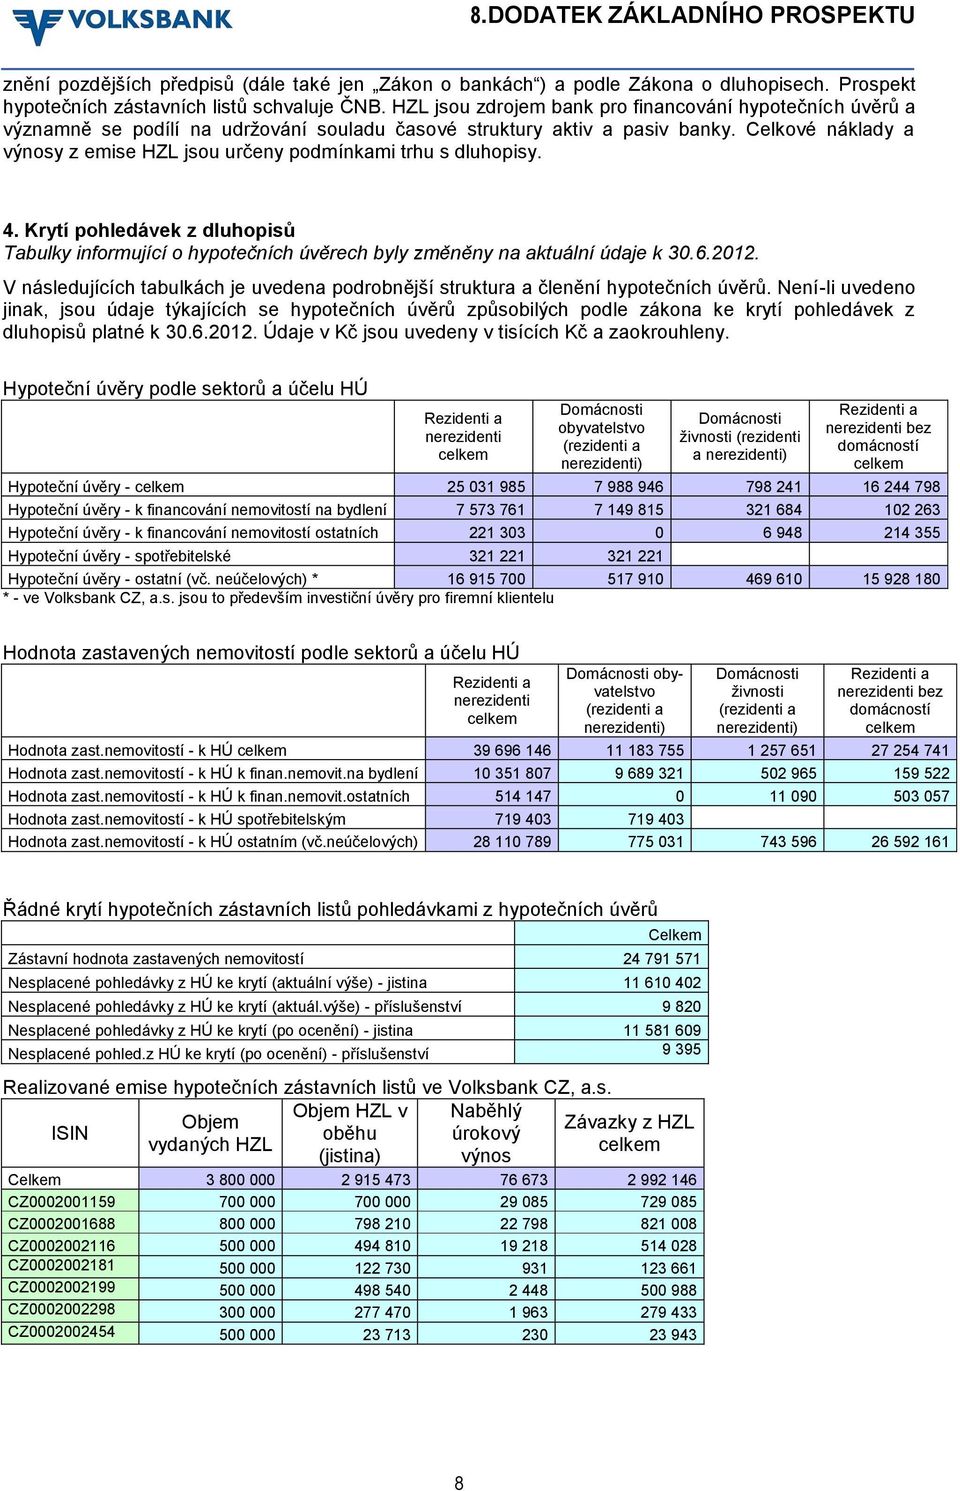 Celkové náklady a výnosy z emise HZL jsou určeny podmínkami trhu s dluhopisy. 4. Krytí pohledávek z dluhopisů Tabulky informující o hypotečních úvěrech byly změněny na aktuální údaje k 30.6.2012.